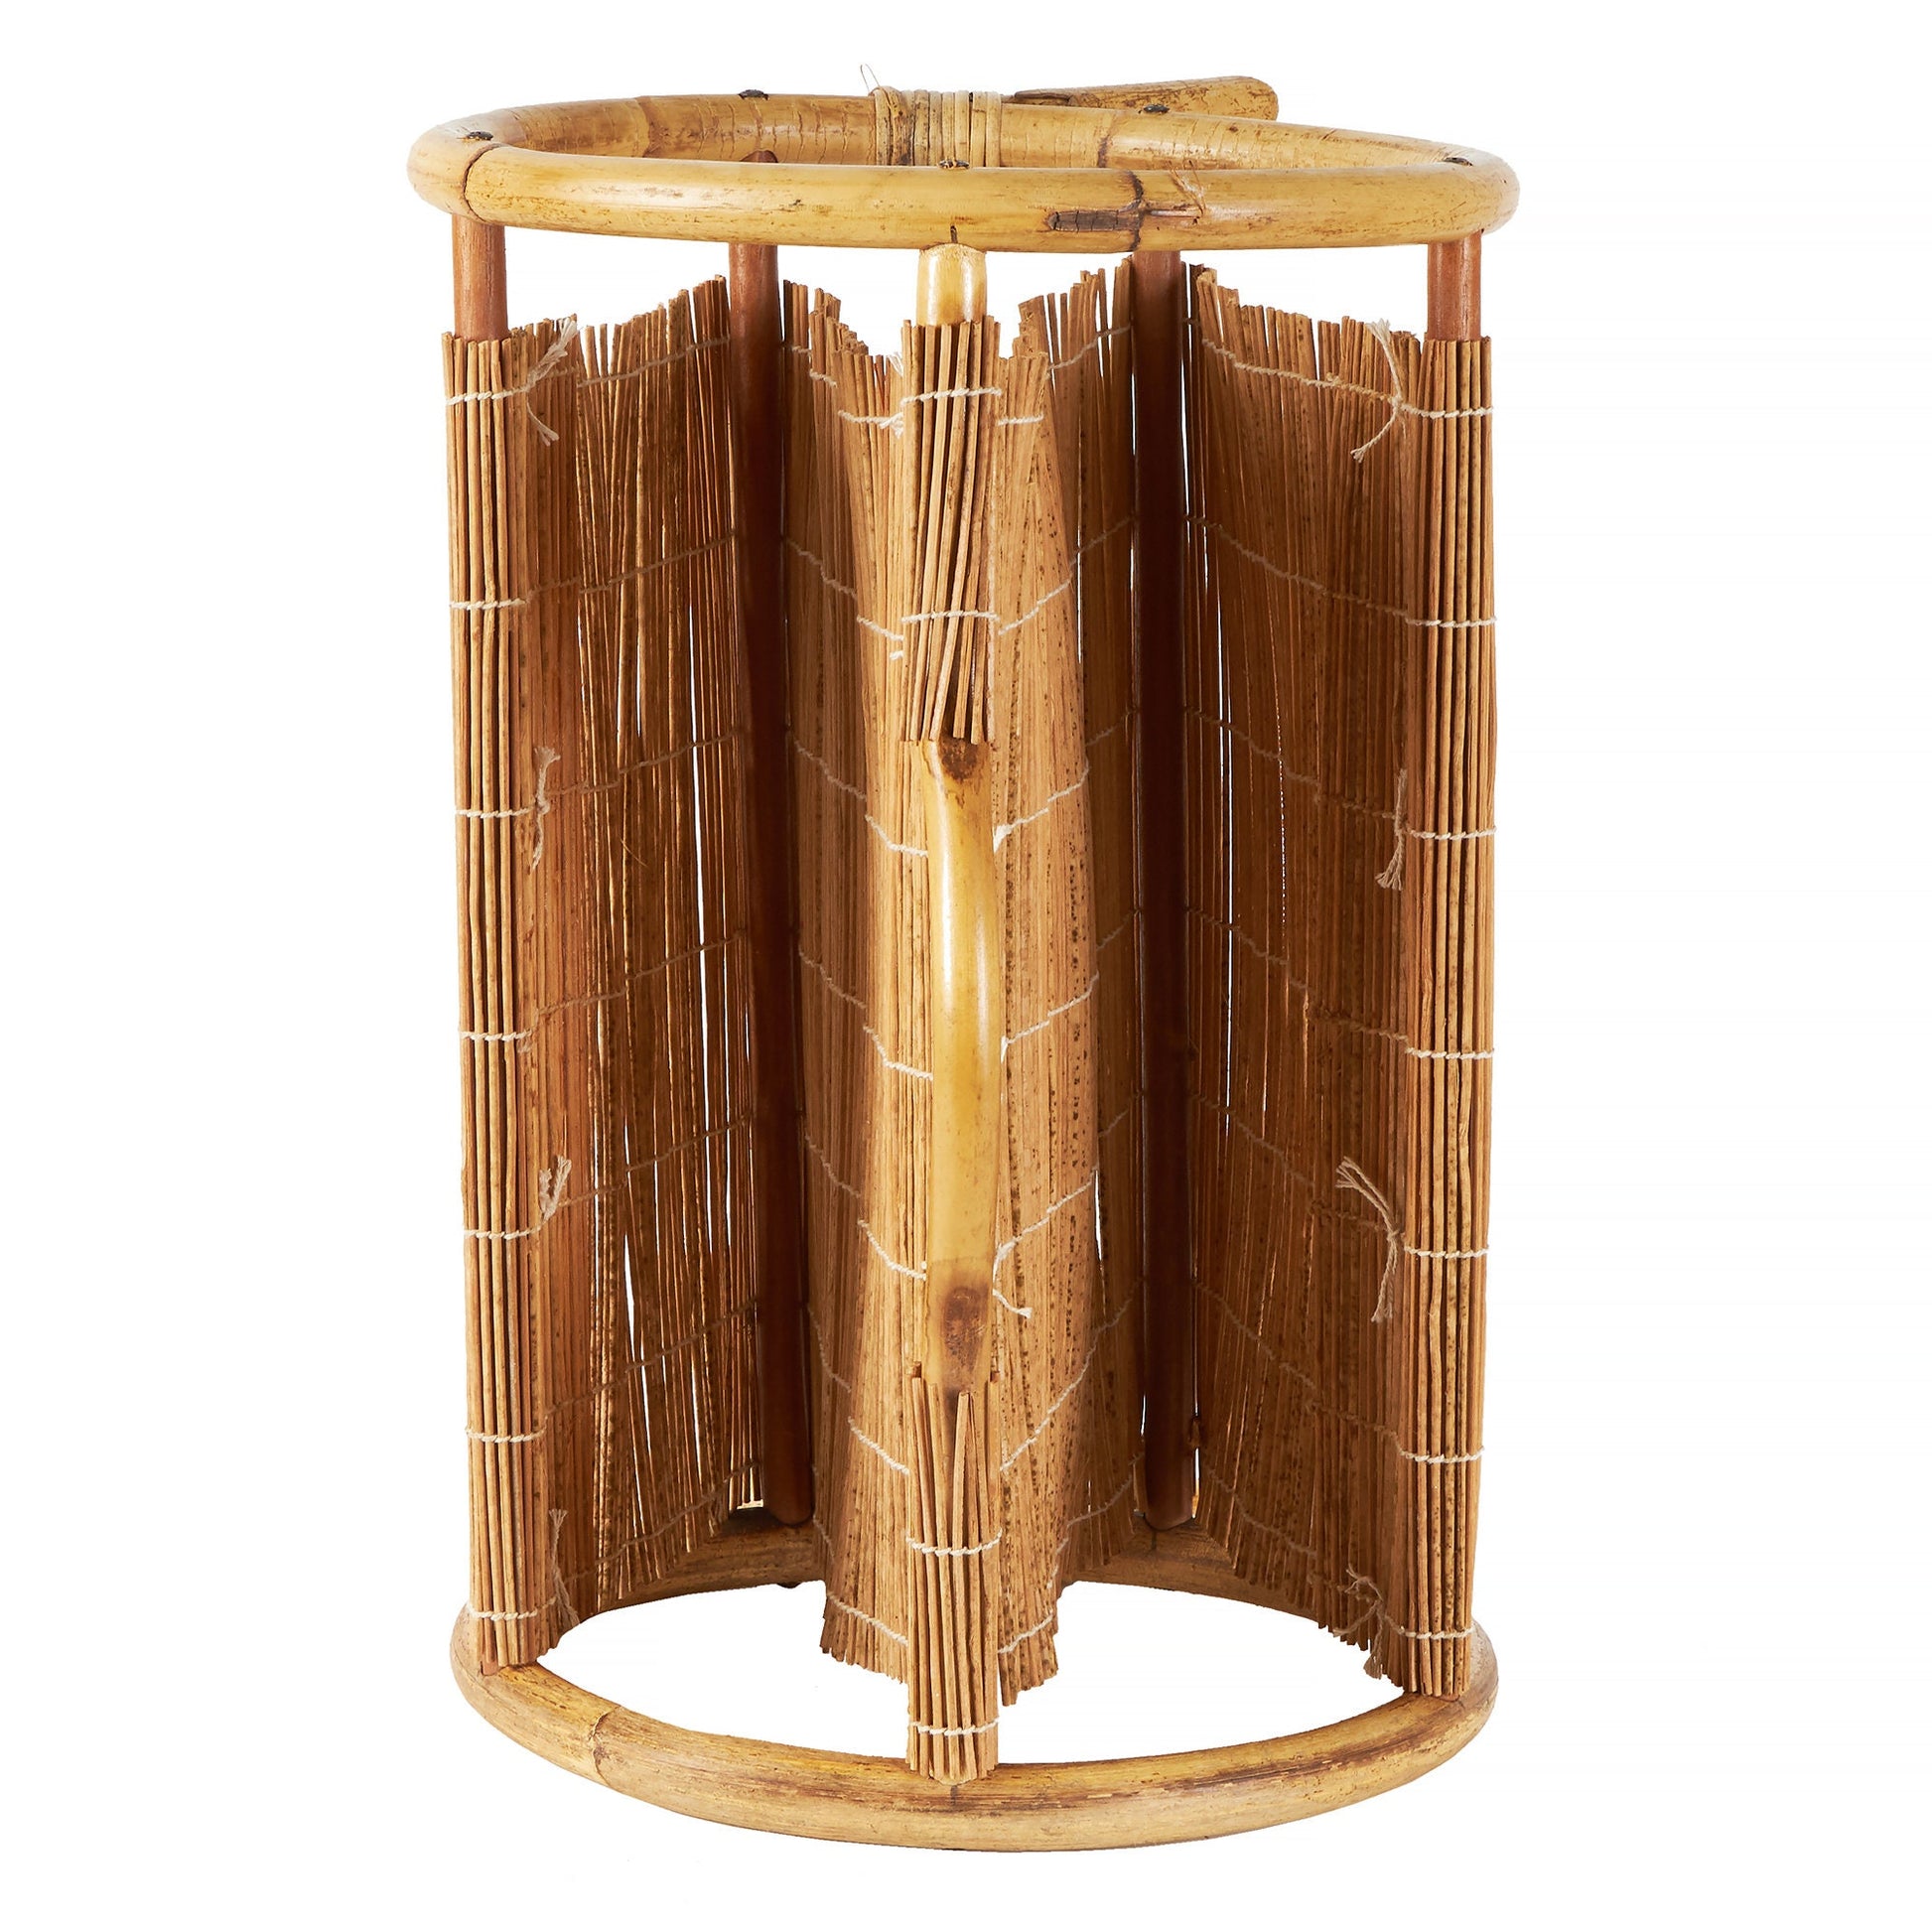 Midcentury Modern Round Bamboo Magazine Rack